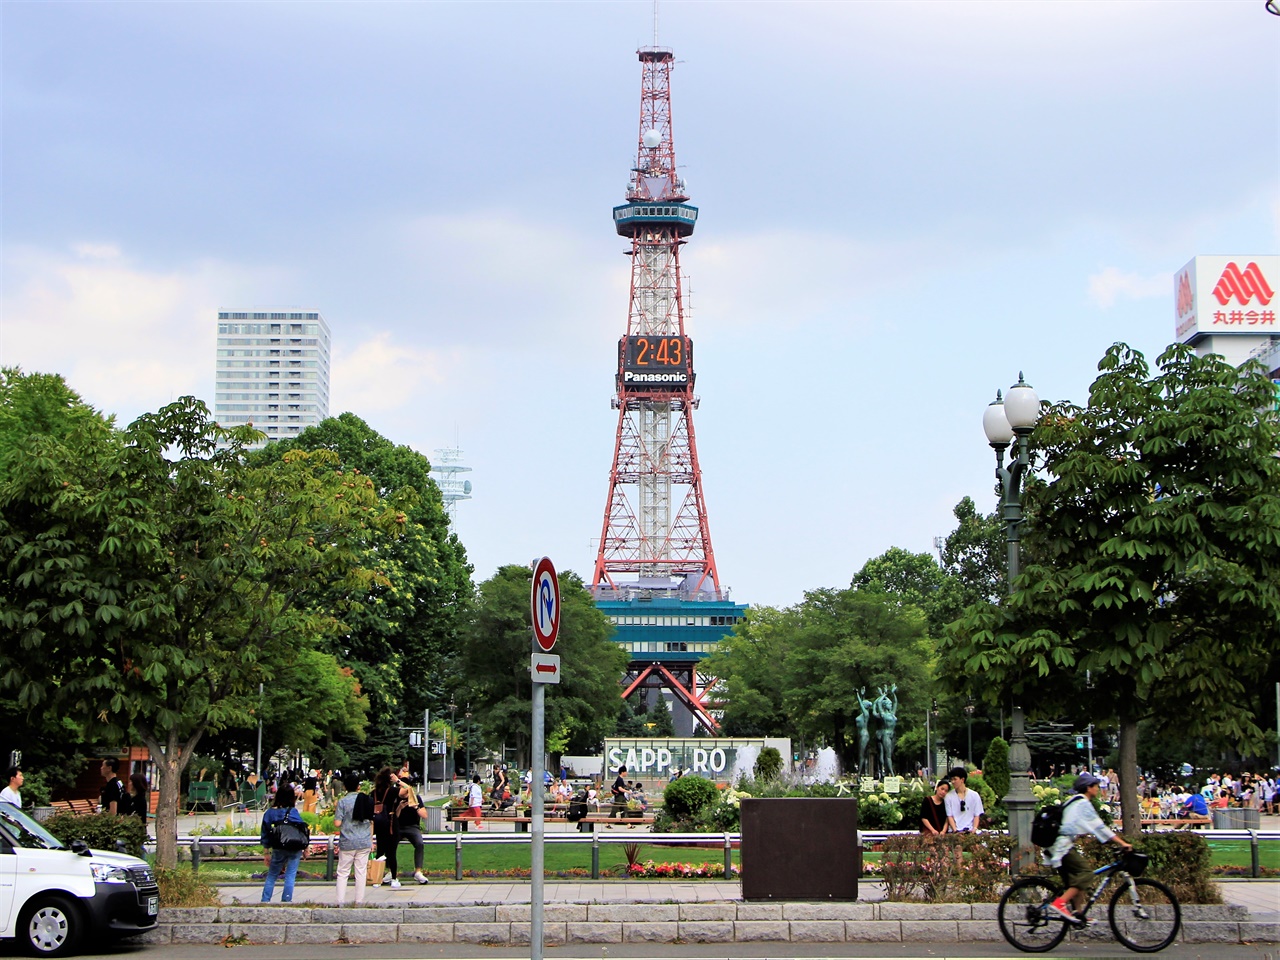  2020 도쿄 올림픽 경보와 마라톤 경기가 펼쳐지는 삿포로 오도리 공원 일대의 모습.